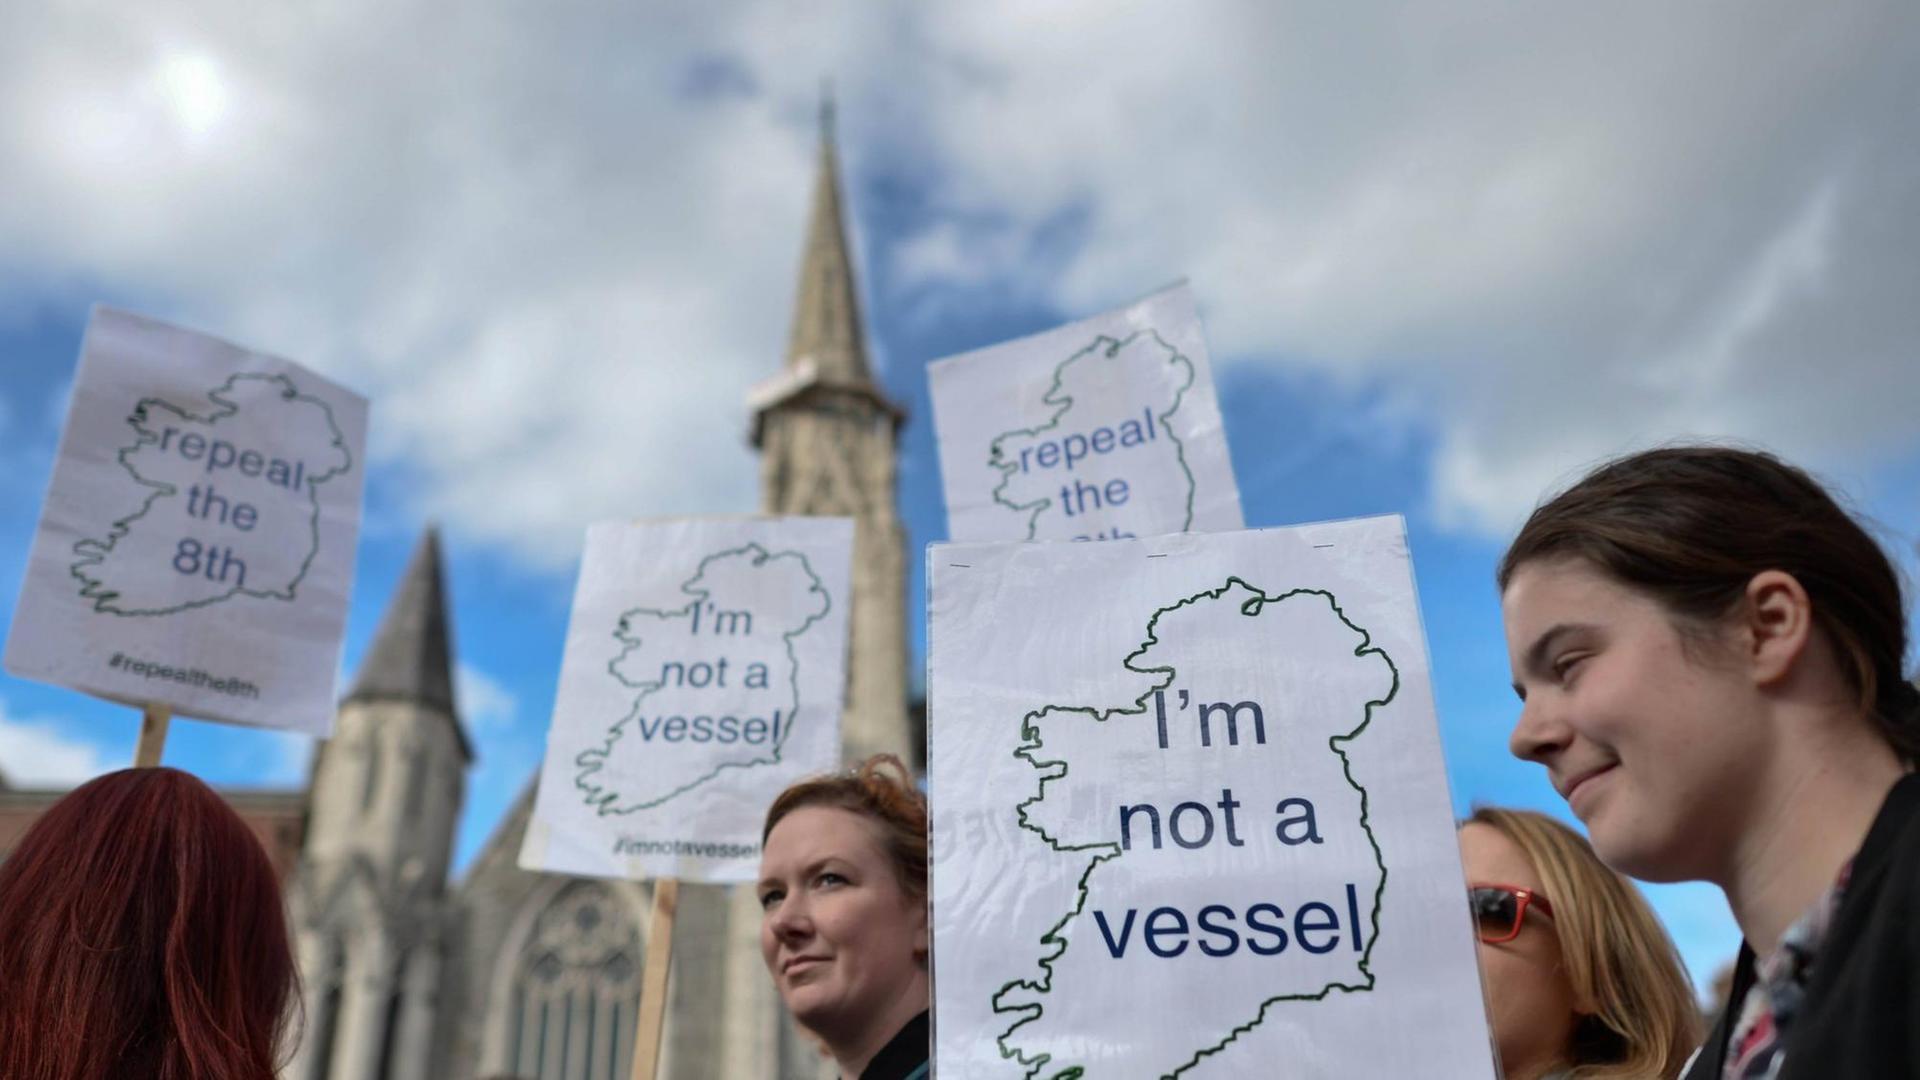 Aktivistinnen demonstrieren mit Schildern, mit der Aufschrift "I'm not a vessel" und den Umrissen von Irland, für die Entkriminalisierung von Schwangerschaftsabbrüchen. Im Hintergrund ist ein Kirchturm zu sehen.